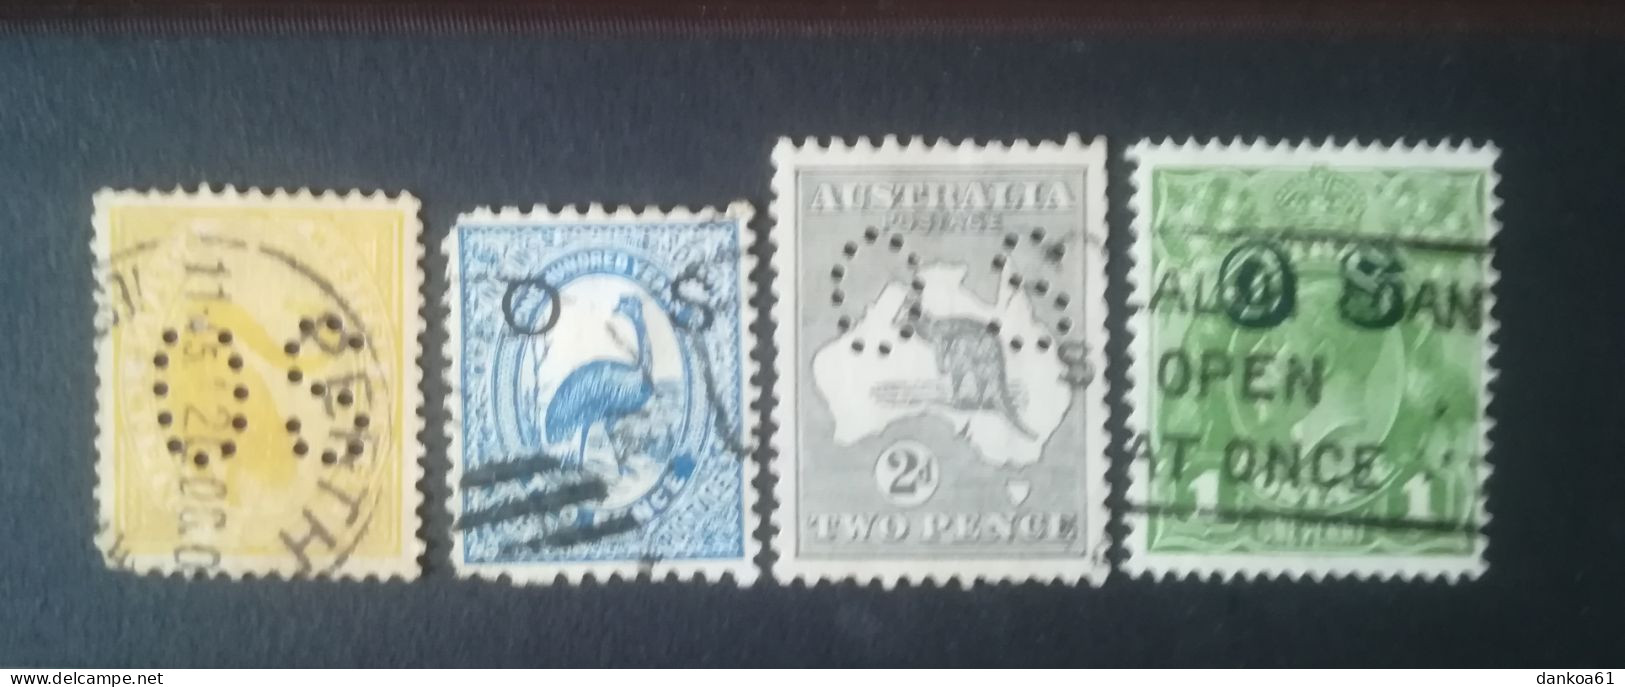 Australien Dienstpost - Dienstzegels